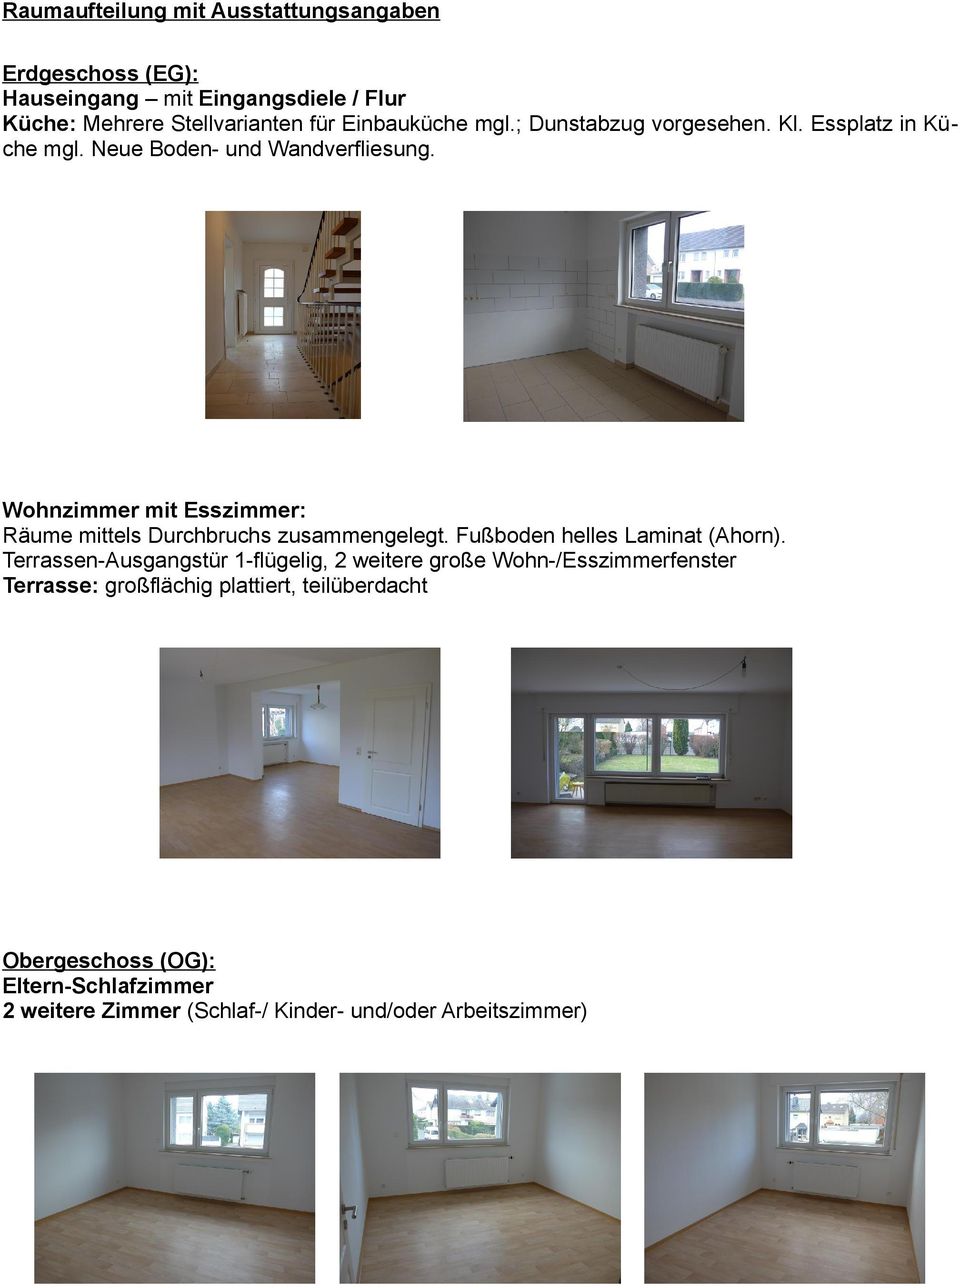 Wohnzimmer mit Esszimmer: Räume mittels Durchbruchs zusammengelegt. Fußboden helles Laminat (Ahorn).